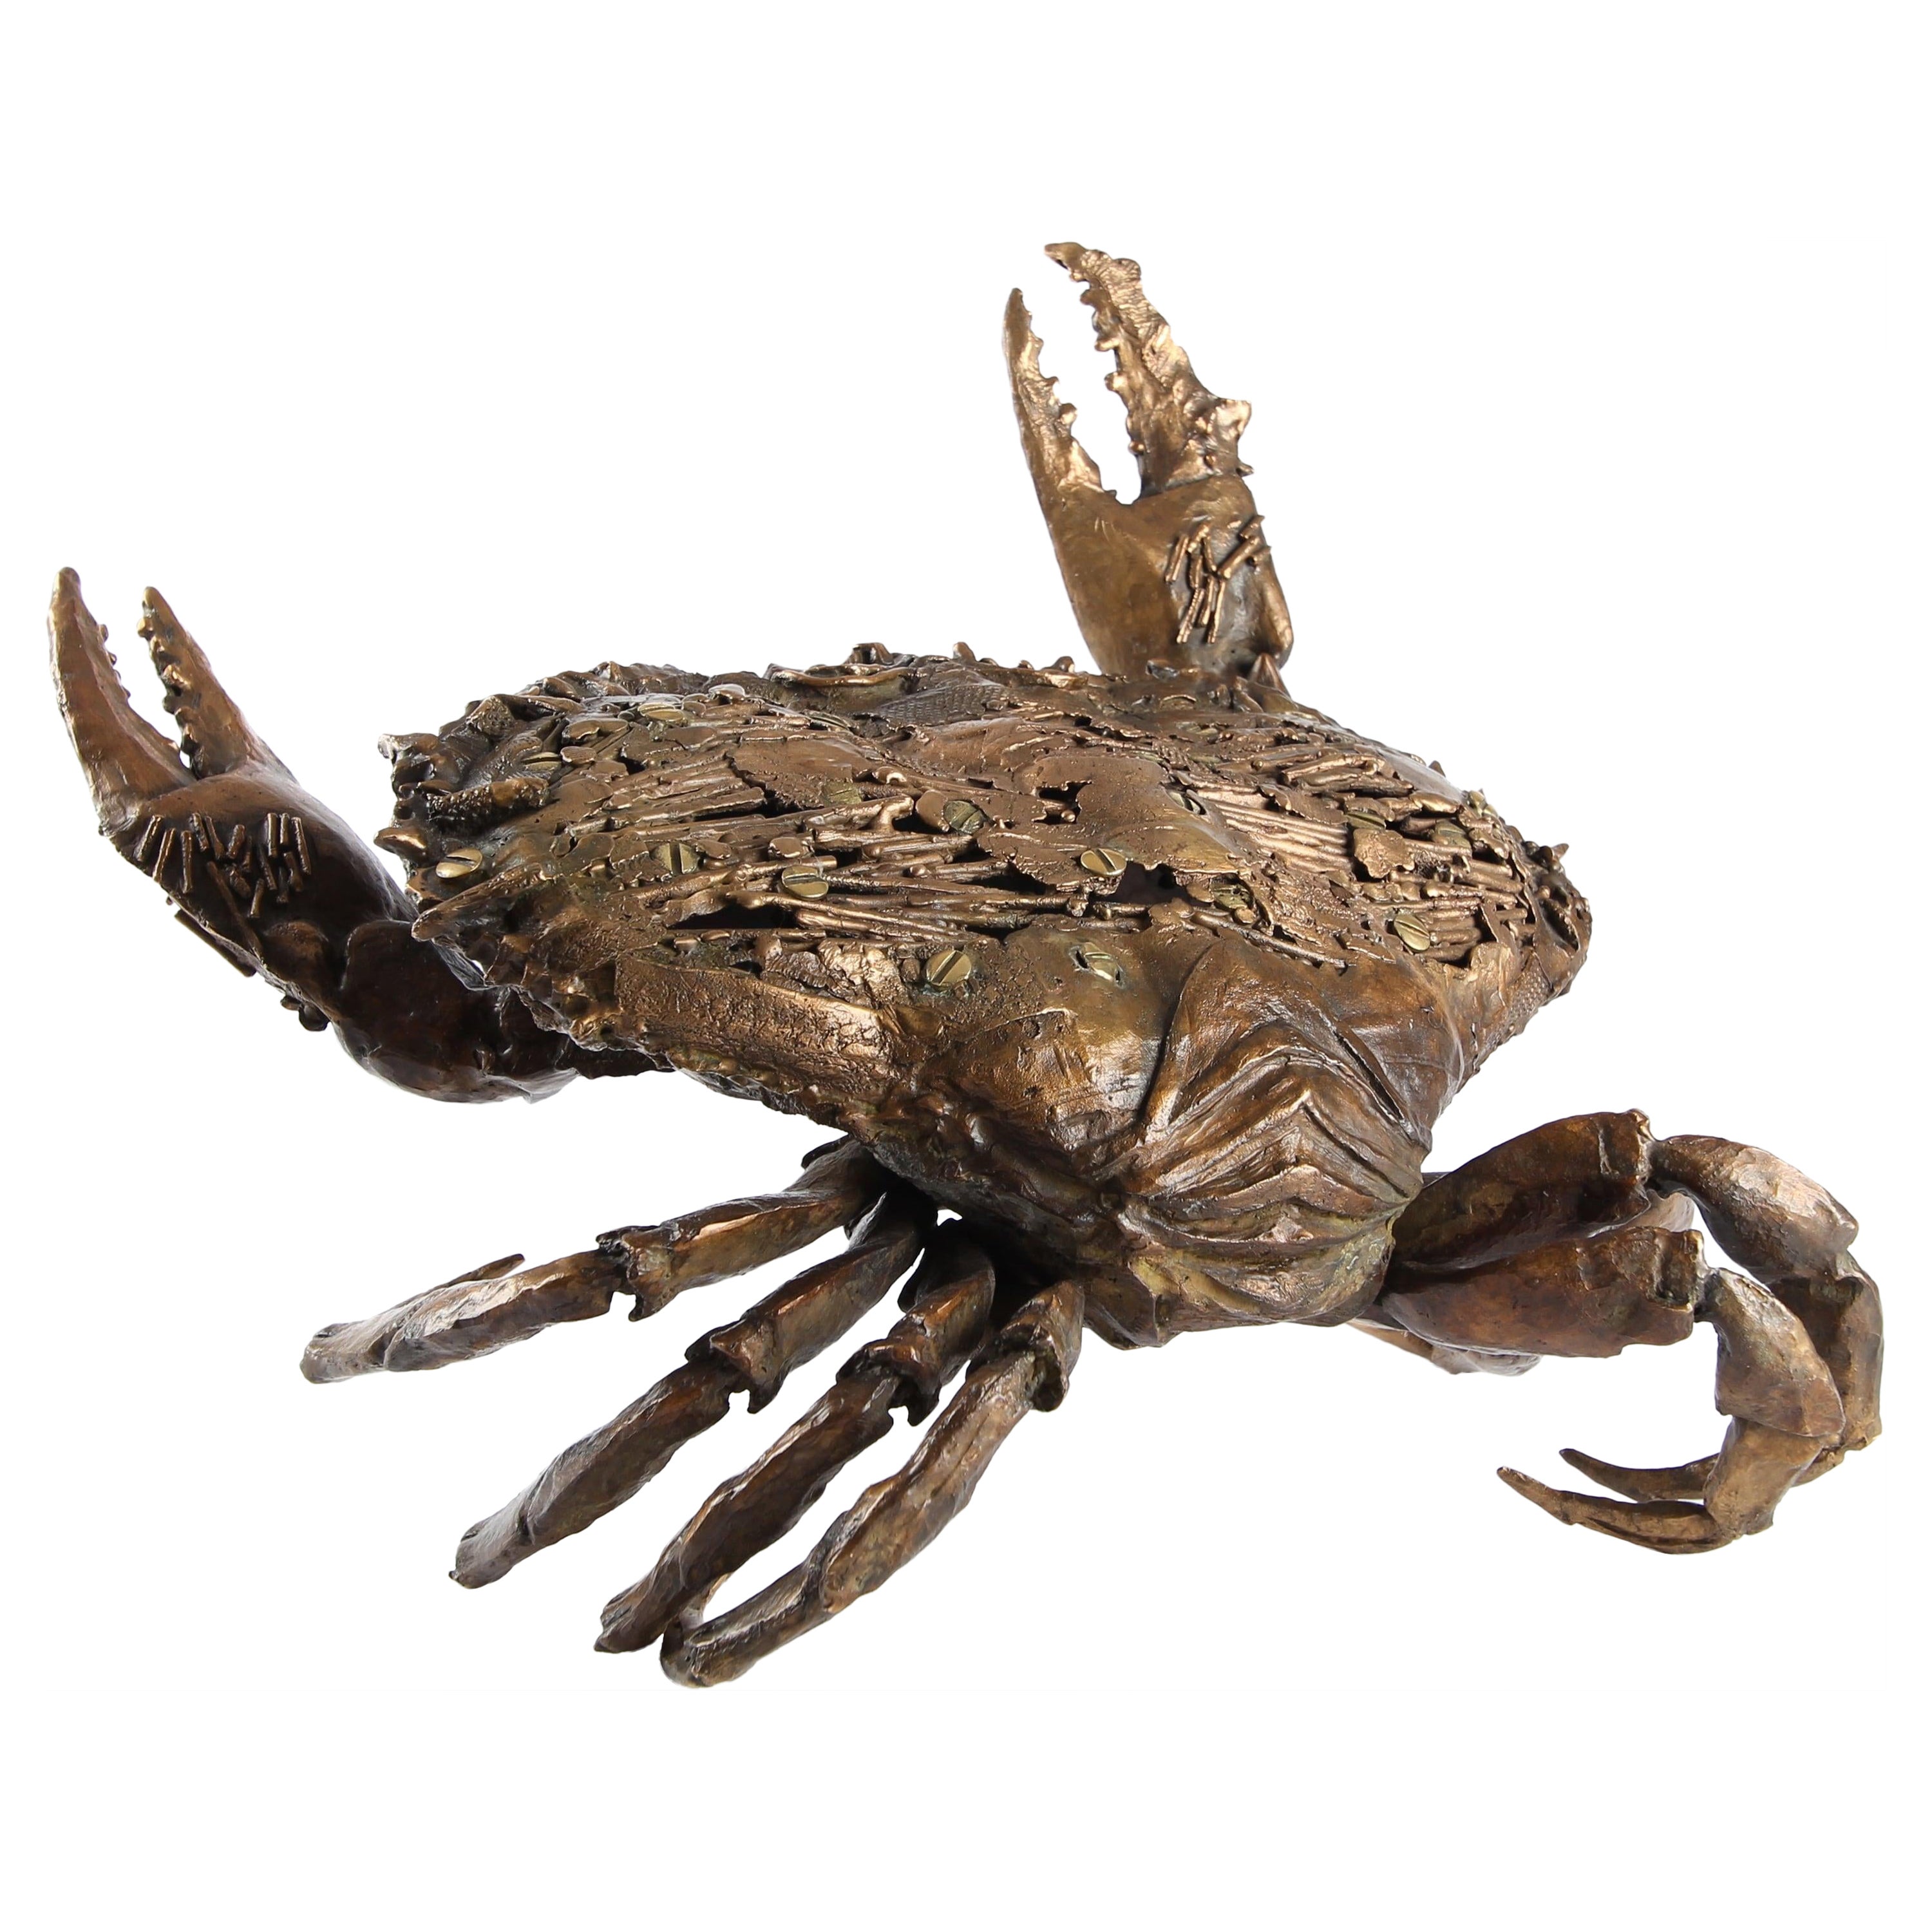 Crab Fighting est une sculpture unique en bronze patiné d'or brun de l'artiste contemporain Chésade, dont les dimensions sont de 38 × 30 × 31 cm (15 × 11.8 × 12.2 in). 
La sculpture est signée et est accompagnée d'un socle en métal et d'un